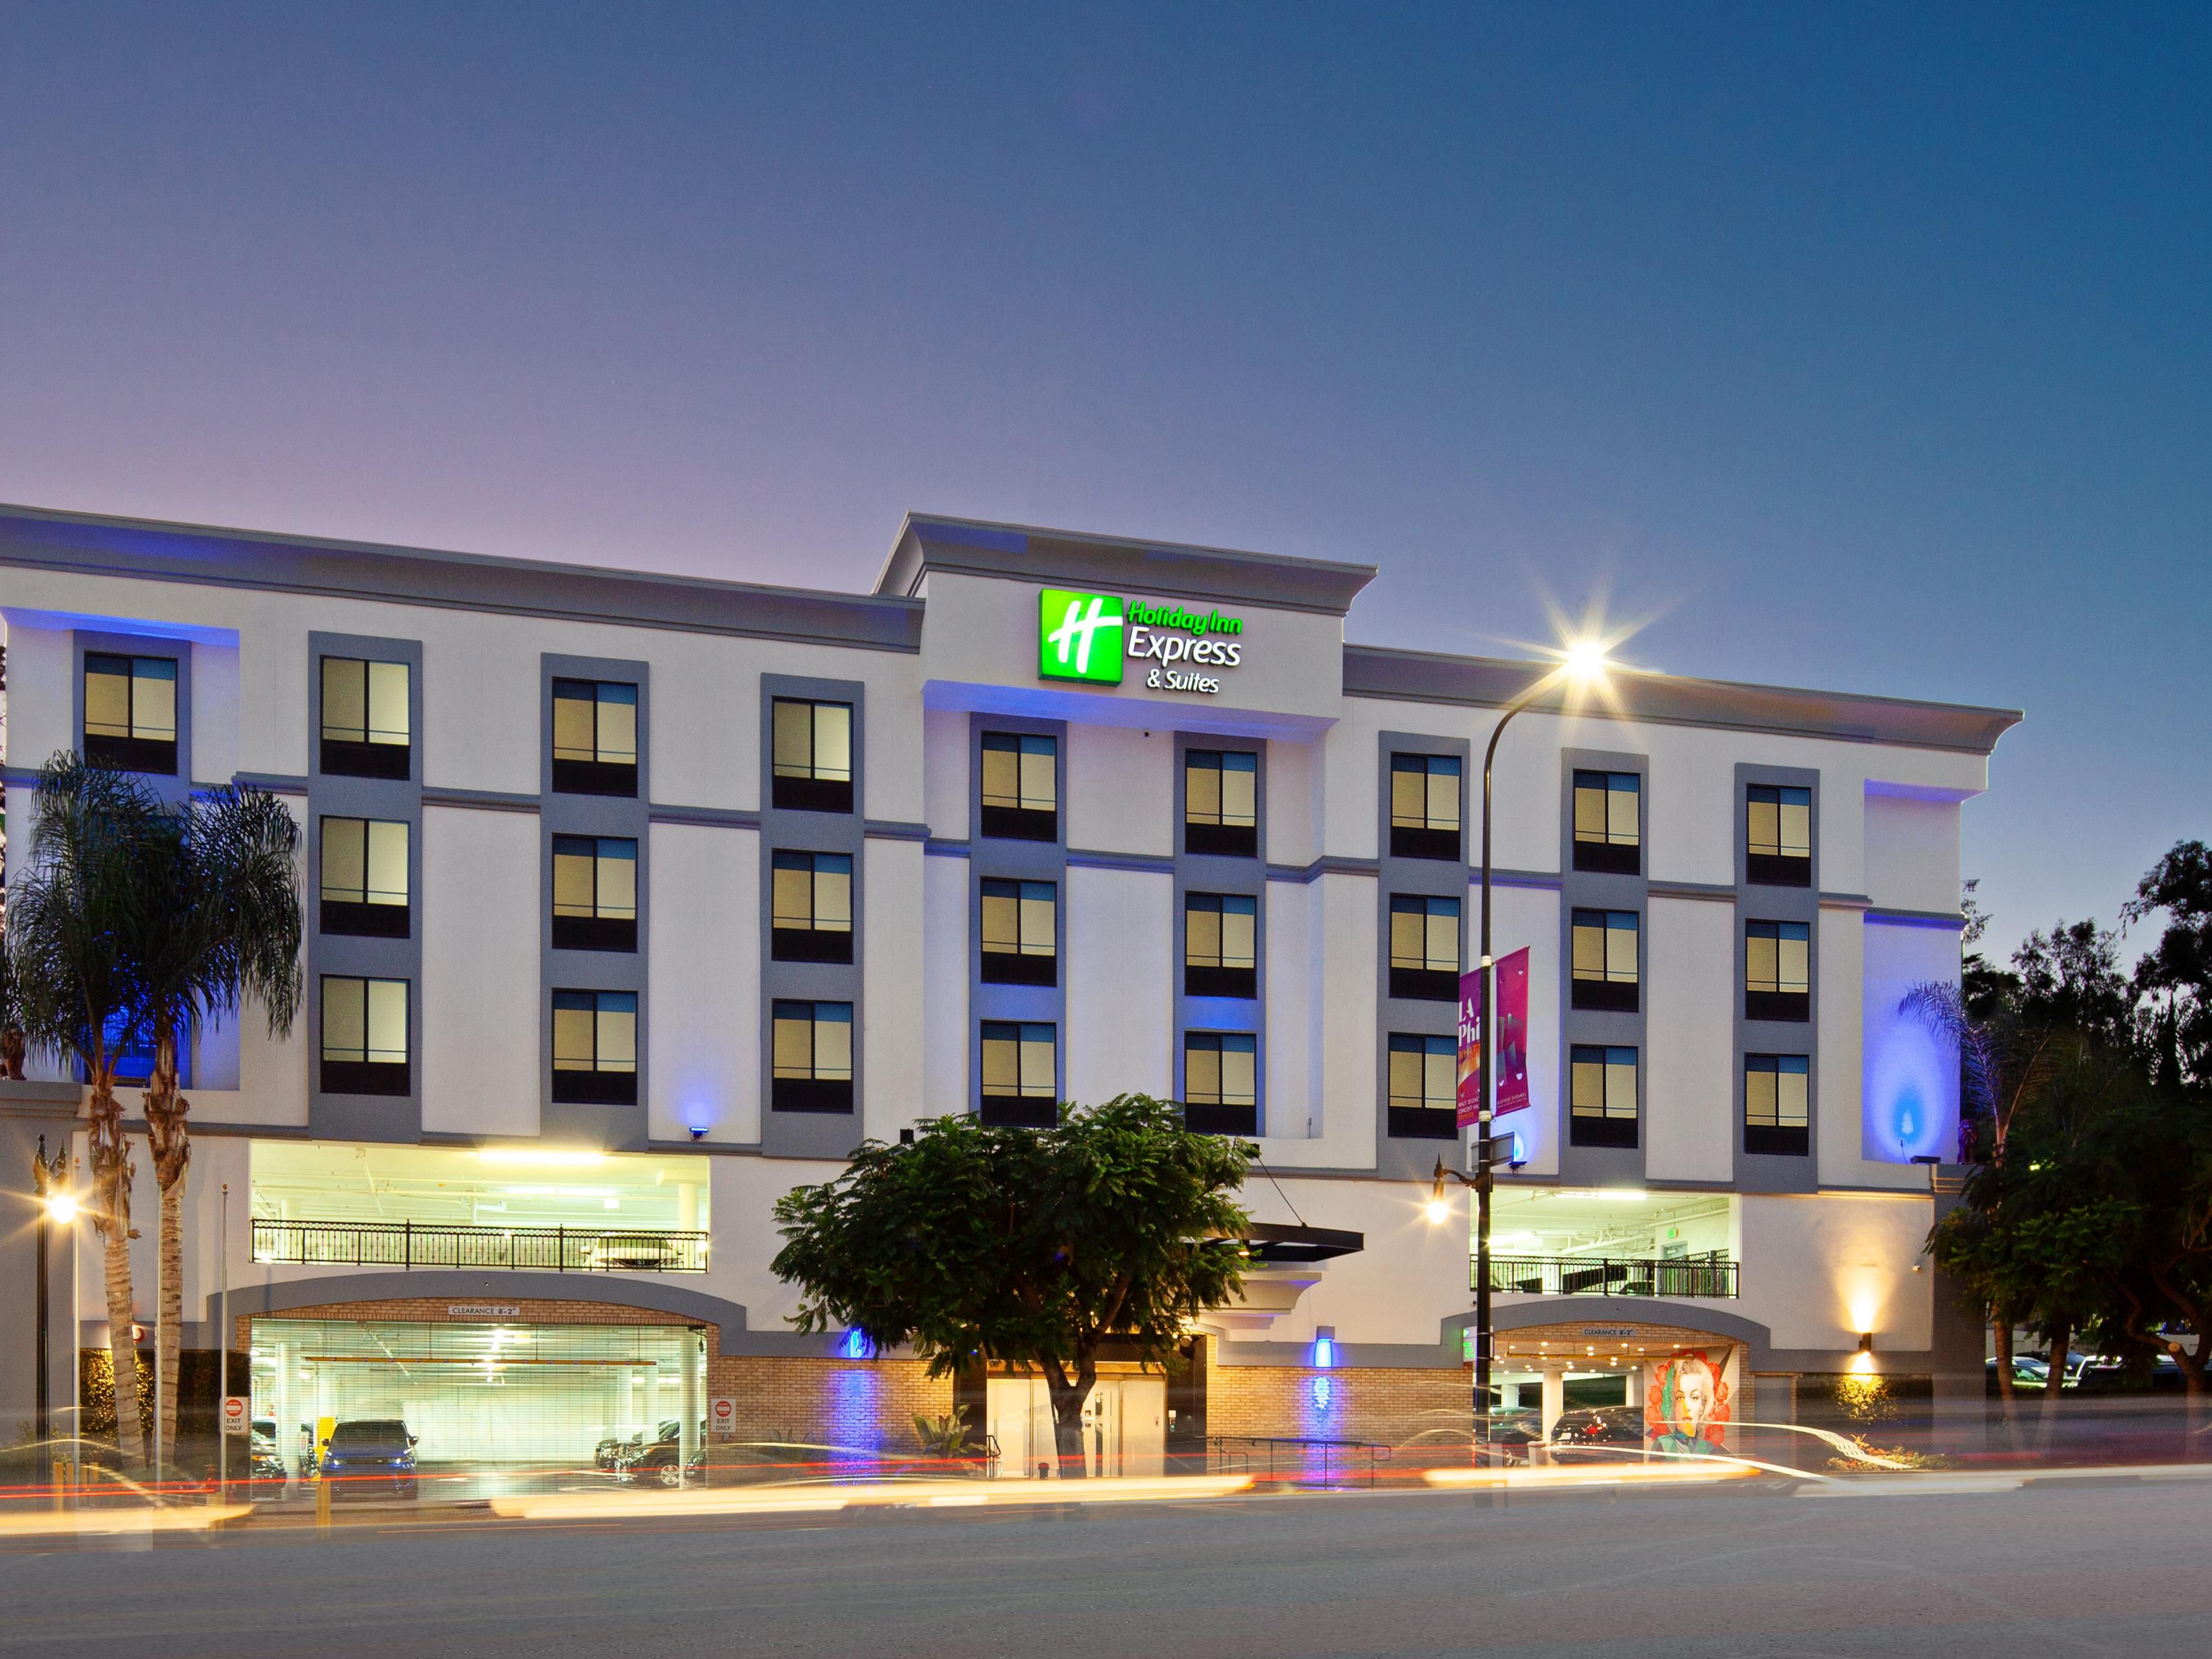 Holiday Inn Express & Suites 好莱坞星光大道 洲际酒店集团旗下酒店